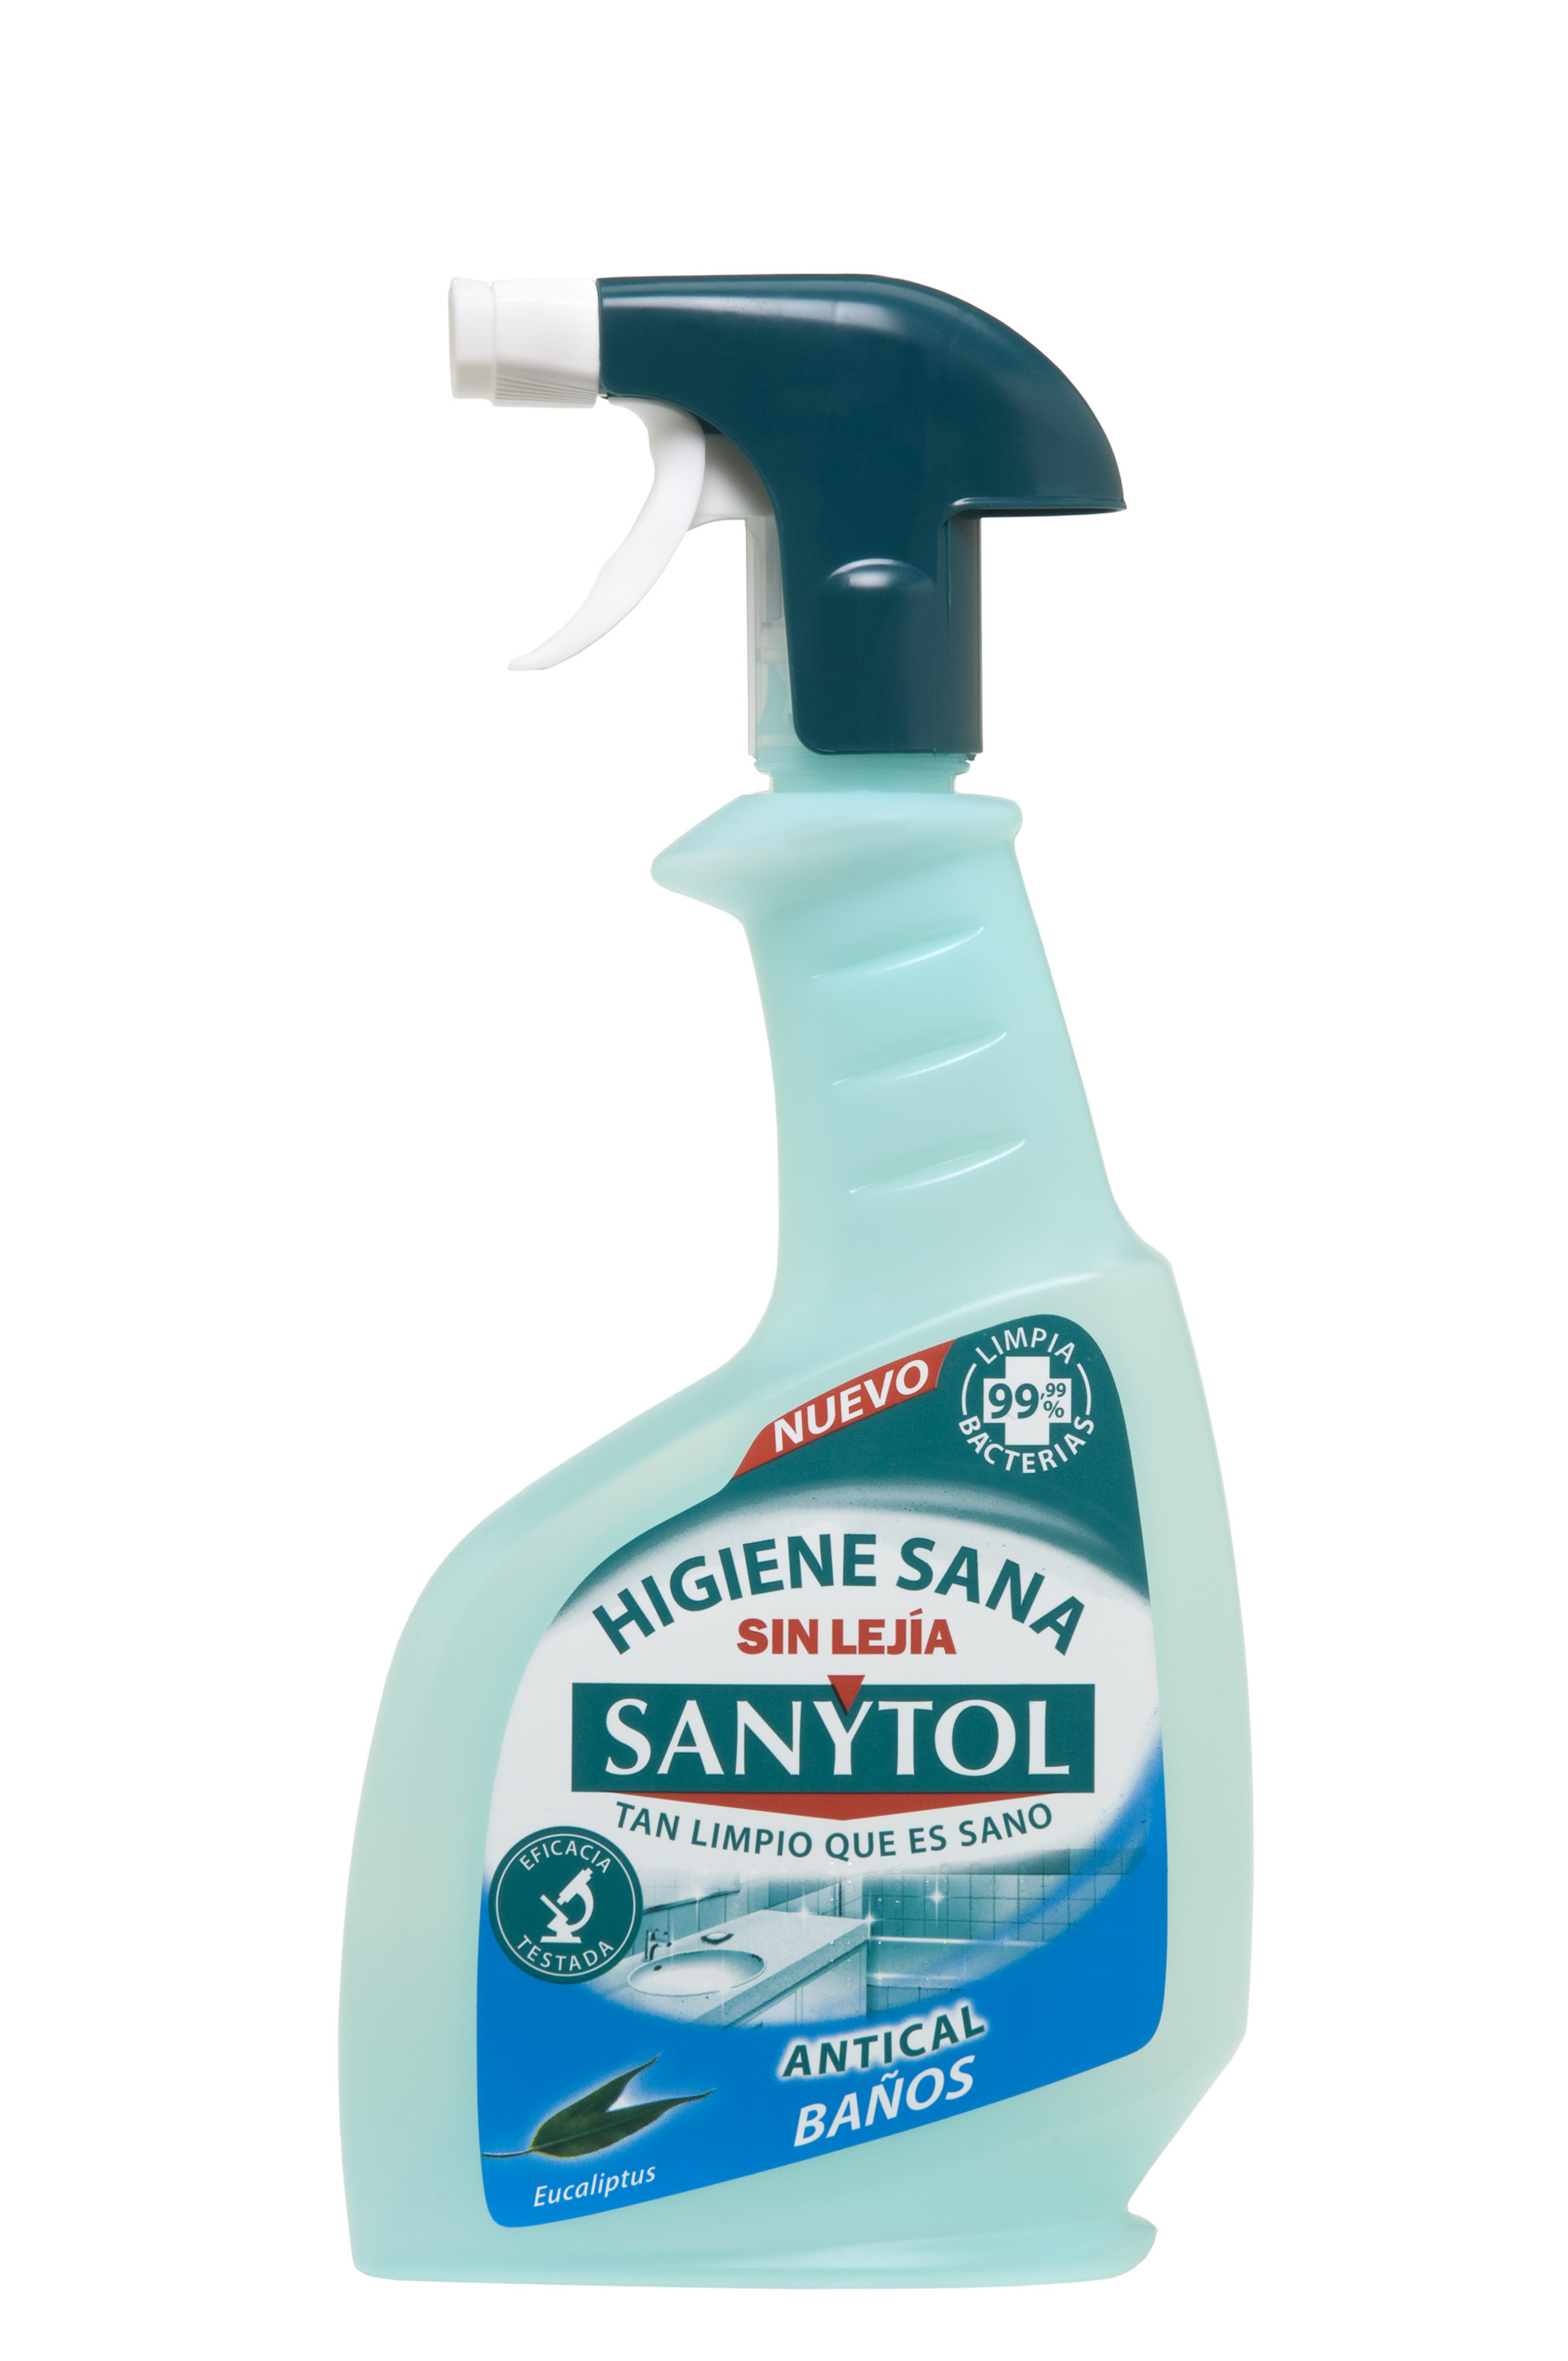 Sanytol: cocinas y baños desinfectados en profundidad